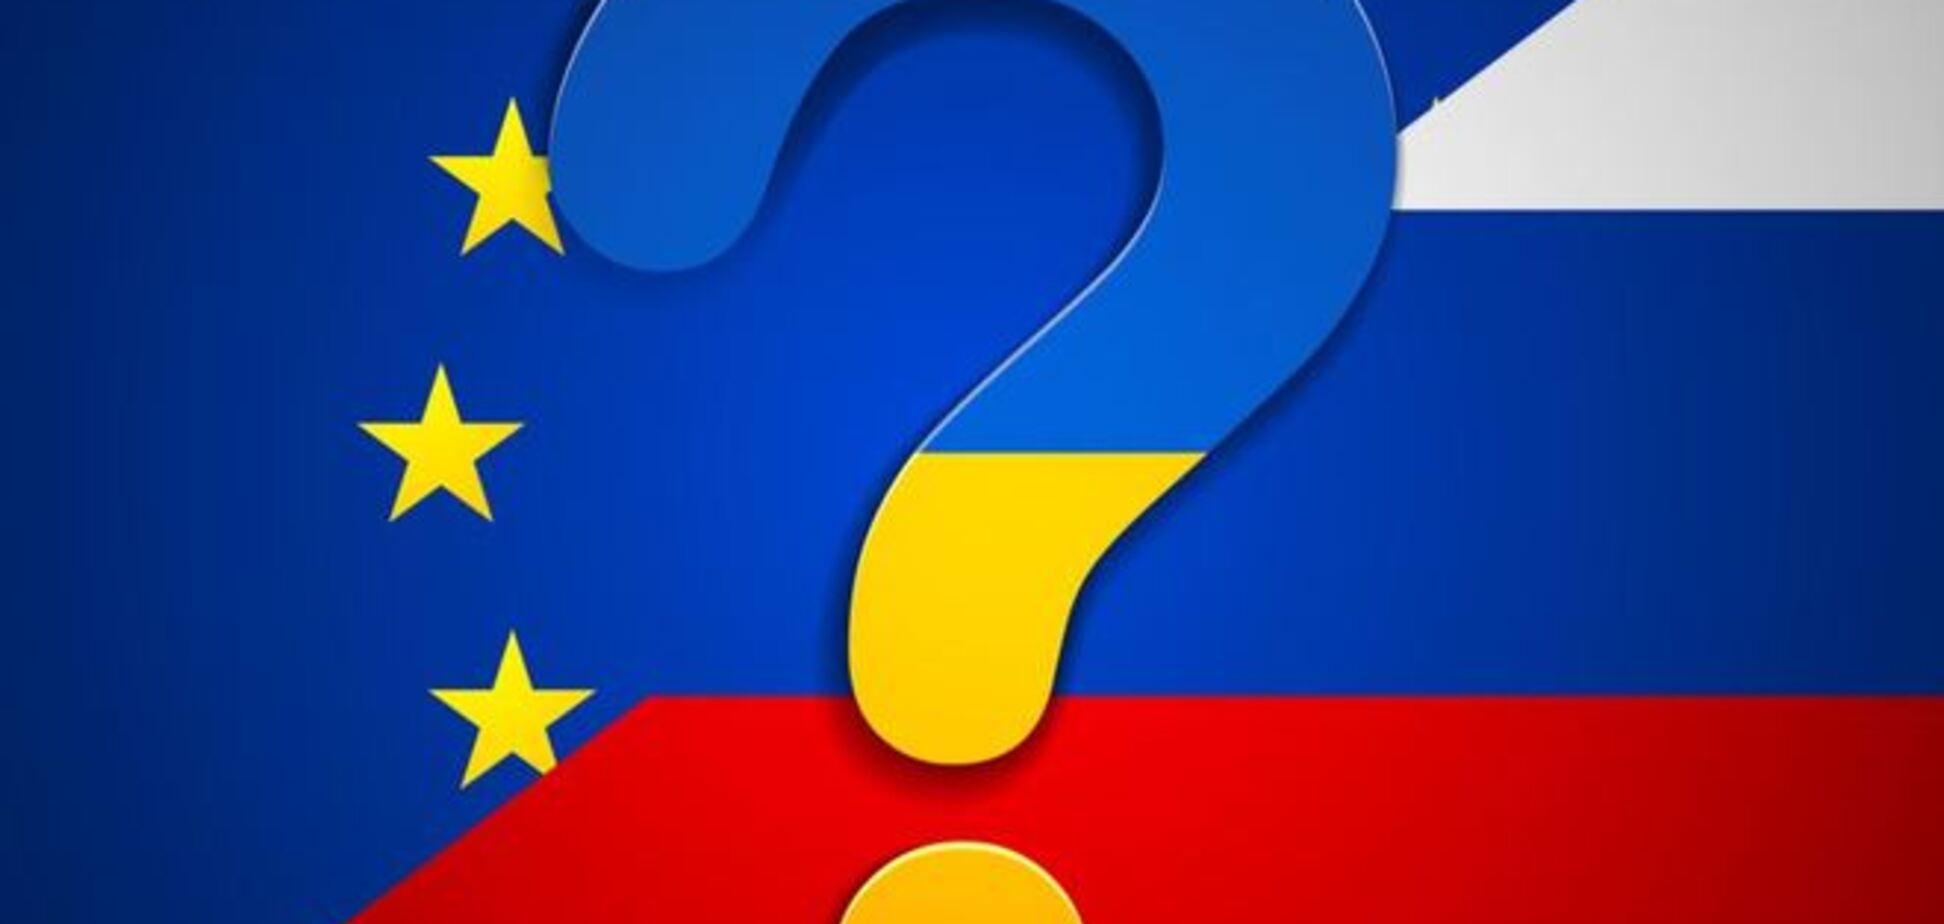 Євросоюз на межі повного розриву відносин з Росією - західні ЗМІ